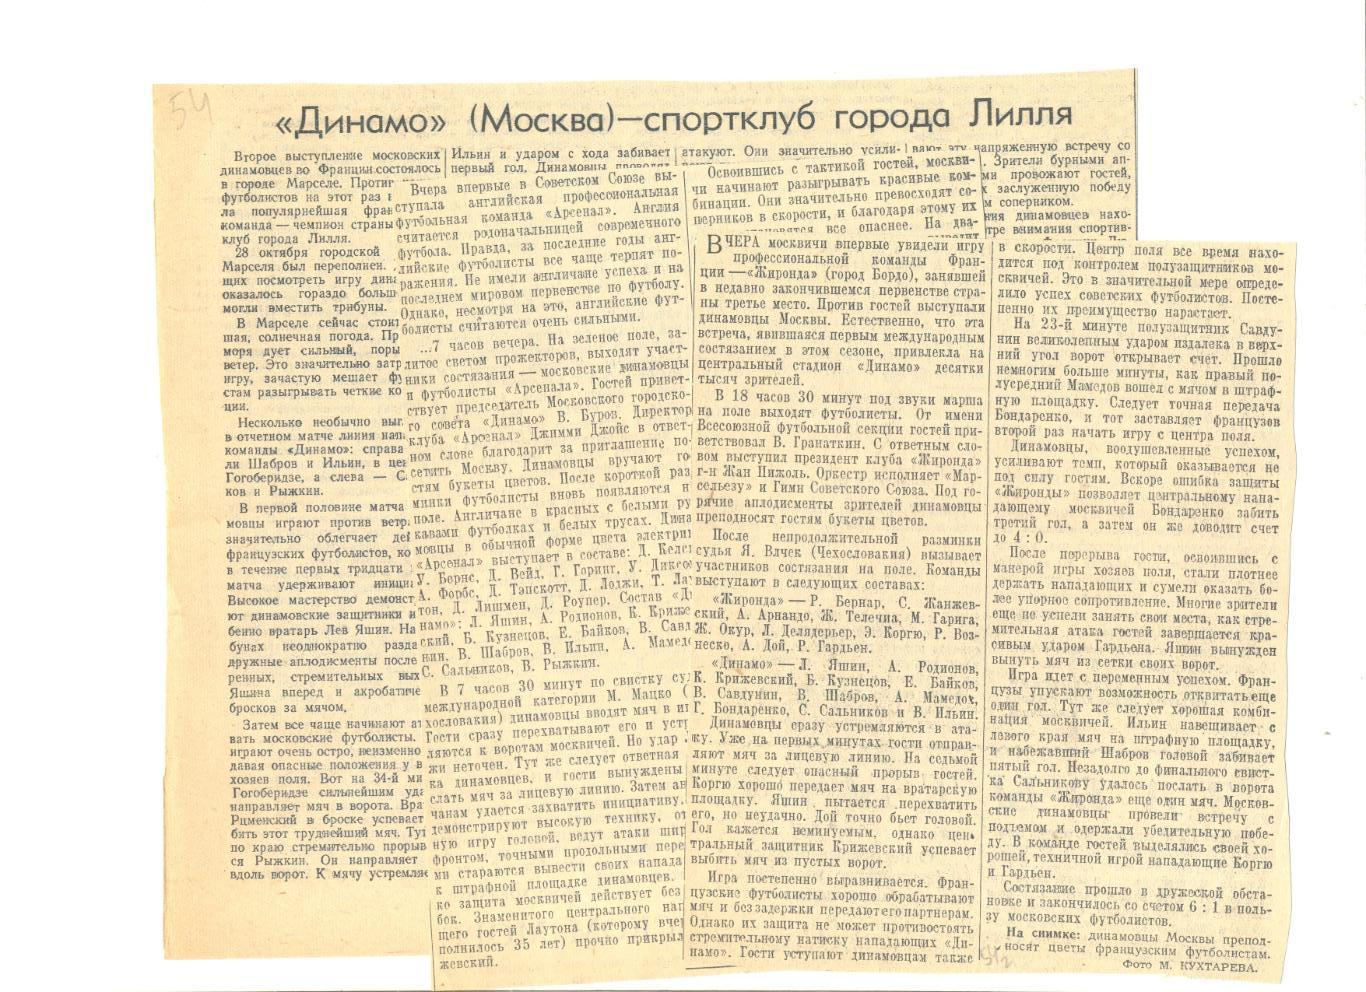 Отчет о матчах Динамо Москва - Жиронда Бордо, Арсенал Лондон, СК Лилль 1954 г.